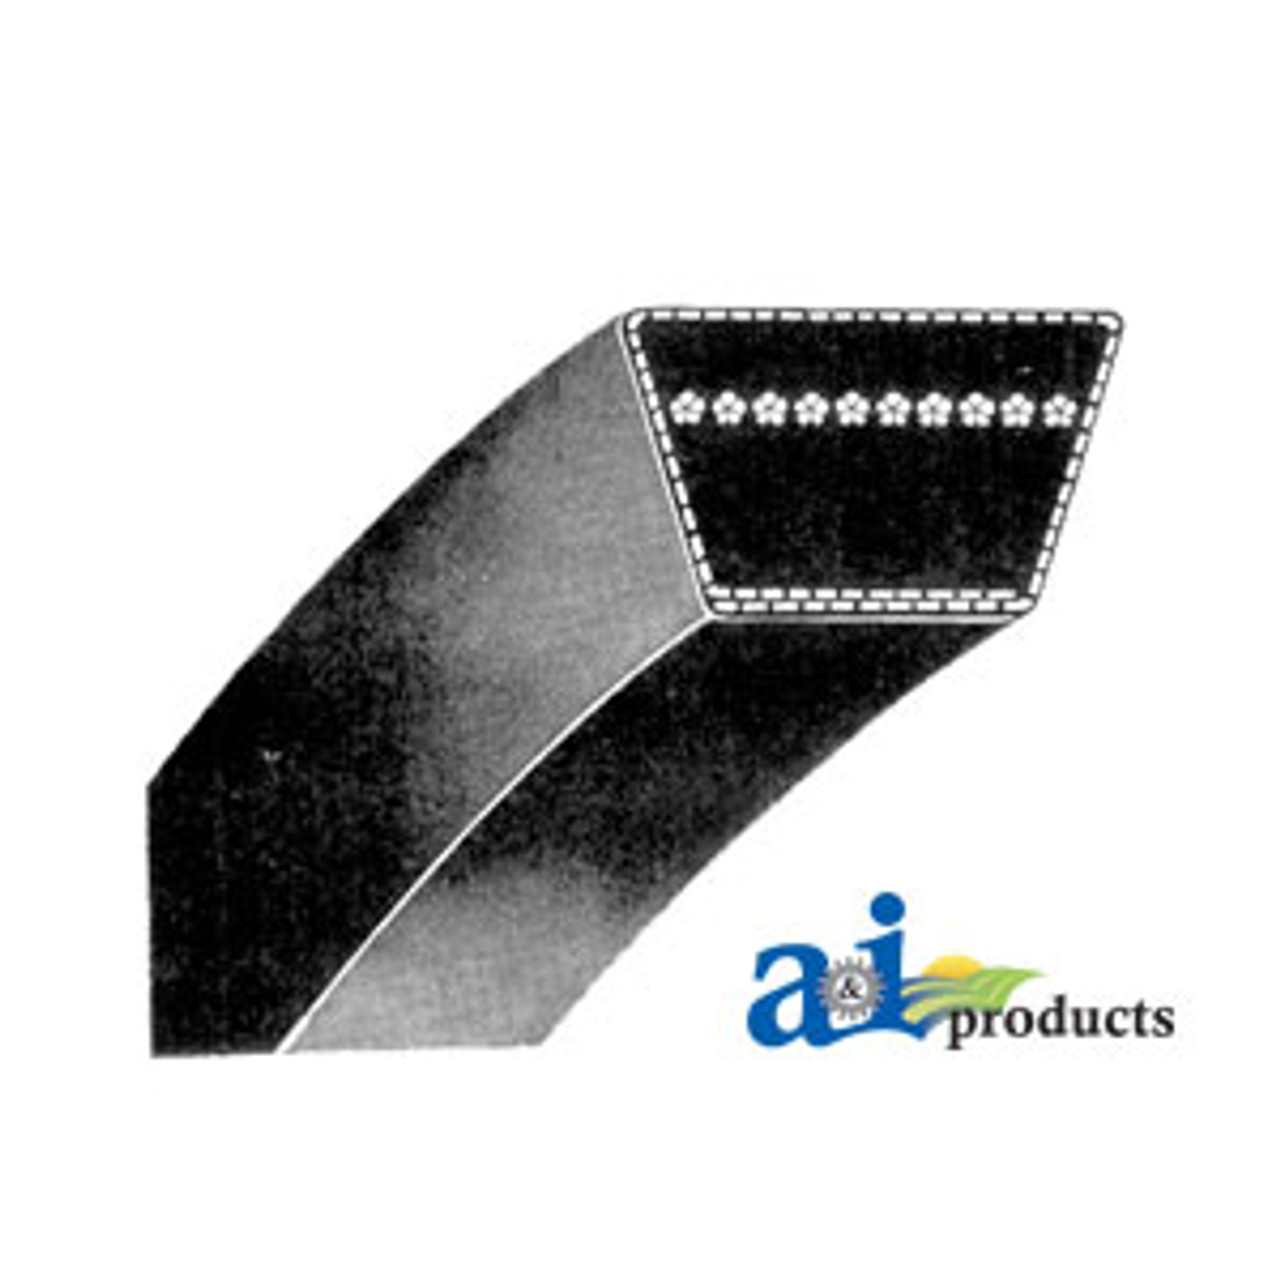 A110K Belt Made with Kevlar 4L1120K Belt 1/2"x 112" Belt A110 V Belt 